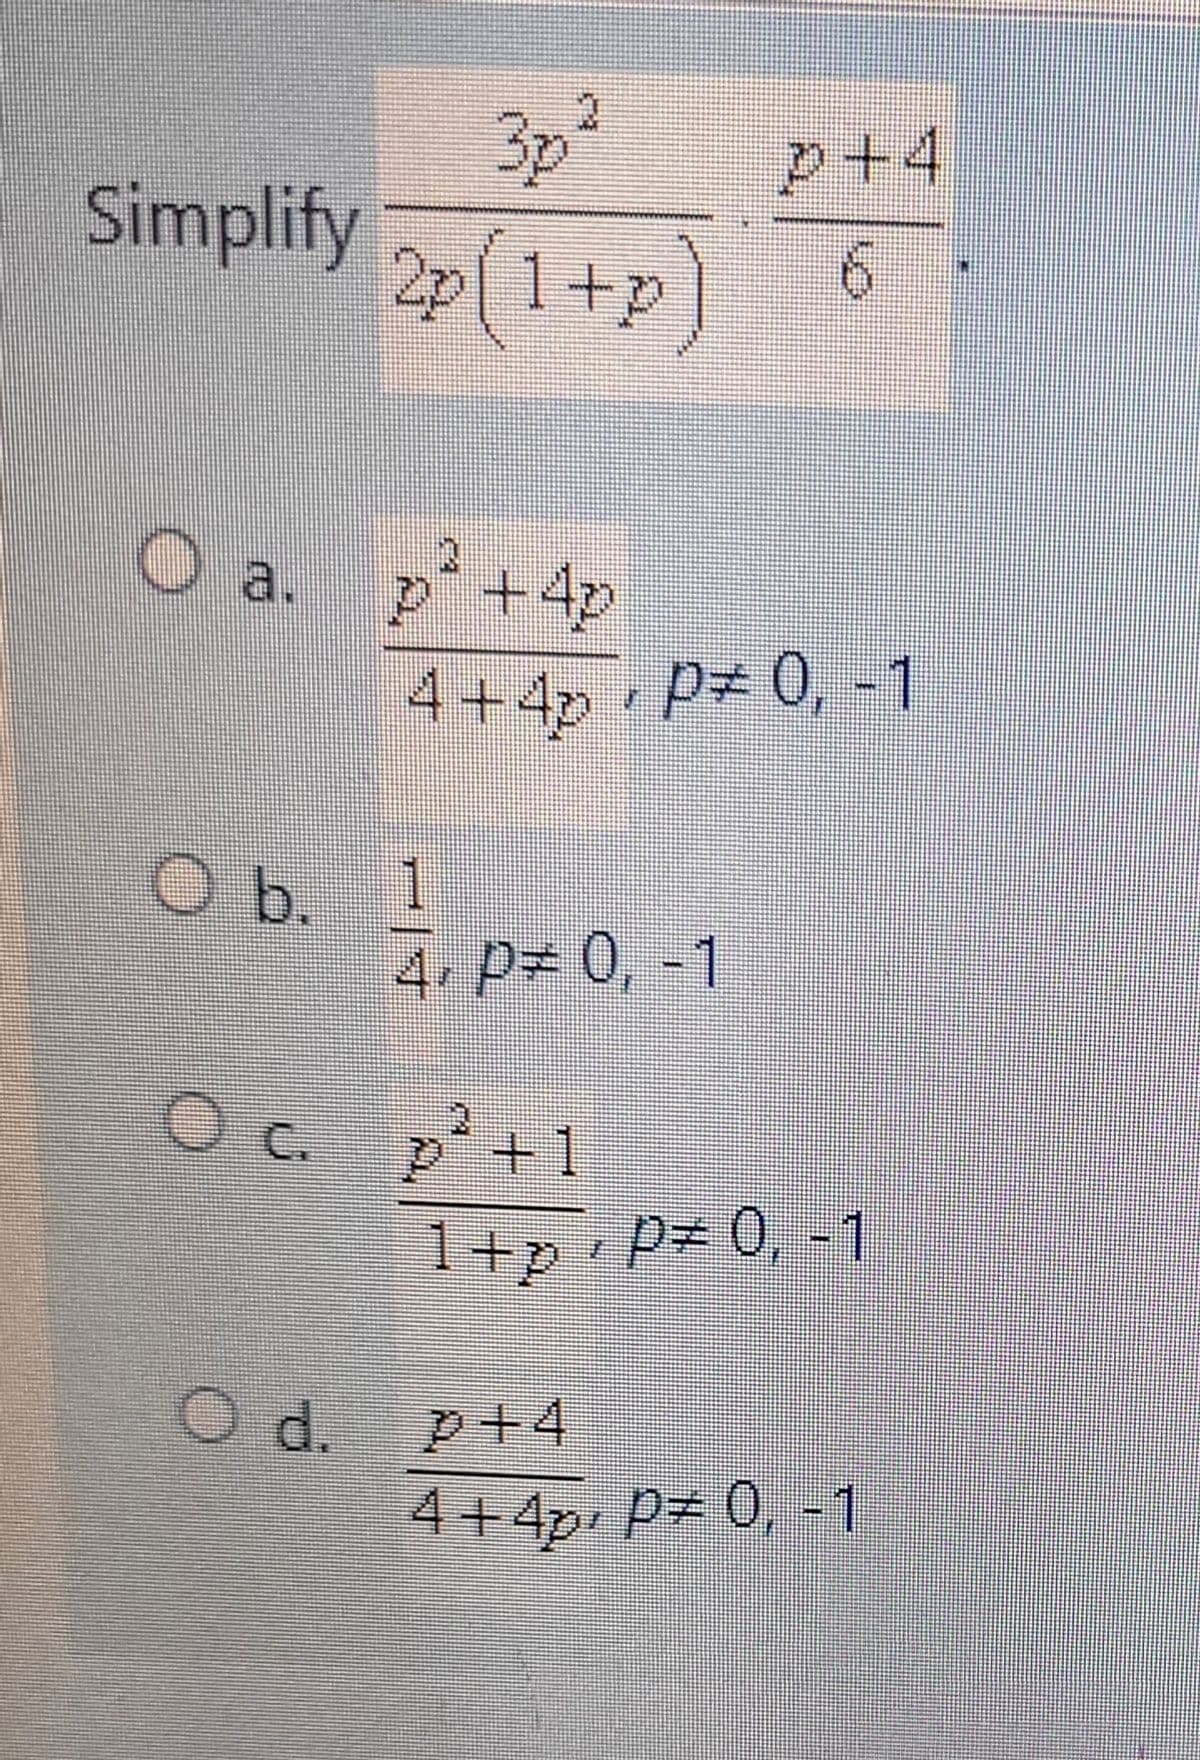 Simplify
O a.
Oc
O d.
3p² p+4
2p(1+p)
p² +4p
4+4 P= 0, -1
1
4, P= 0, -1
p² +1
1+p+P = 0, -1
+4
4+4p P= 0, -1
la ********